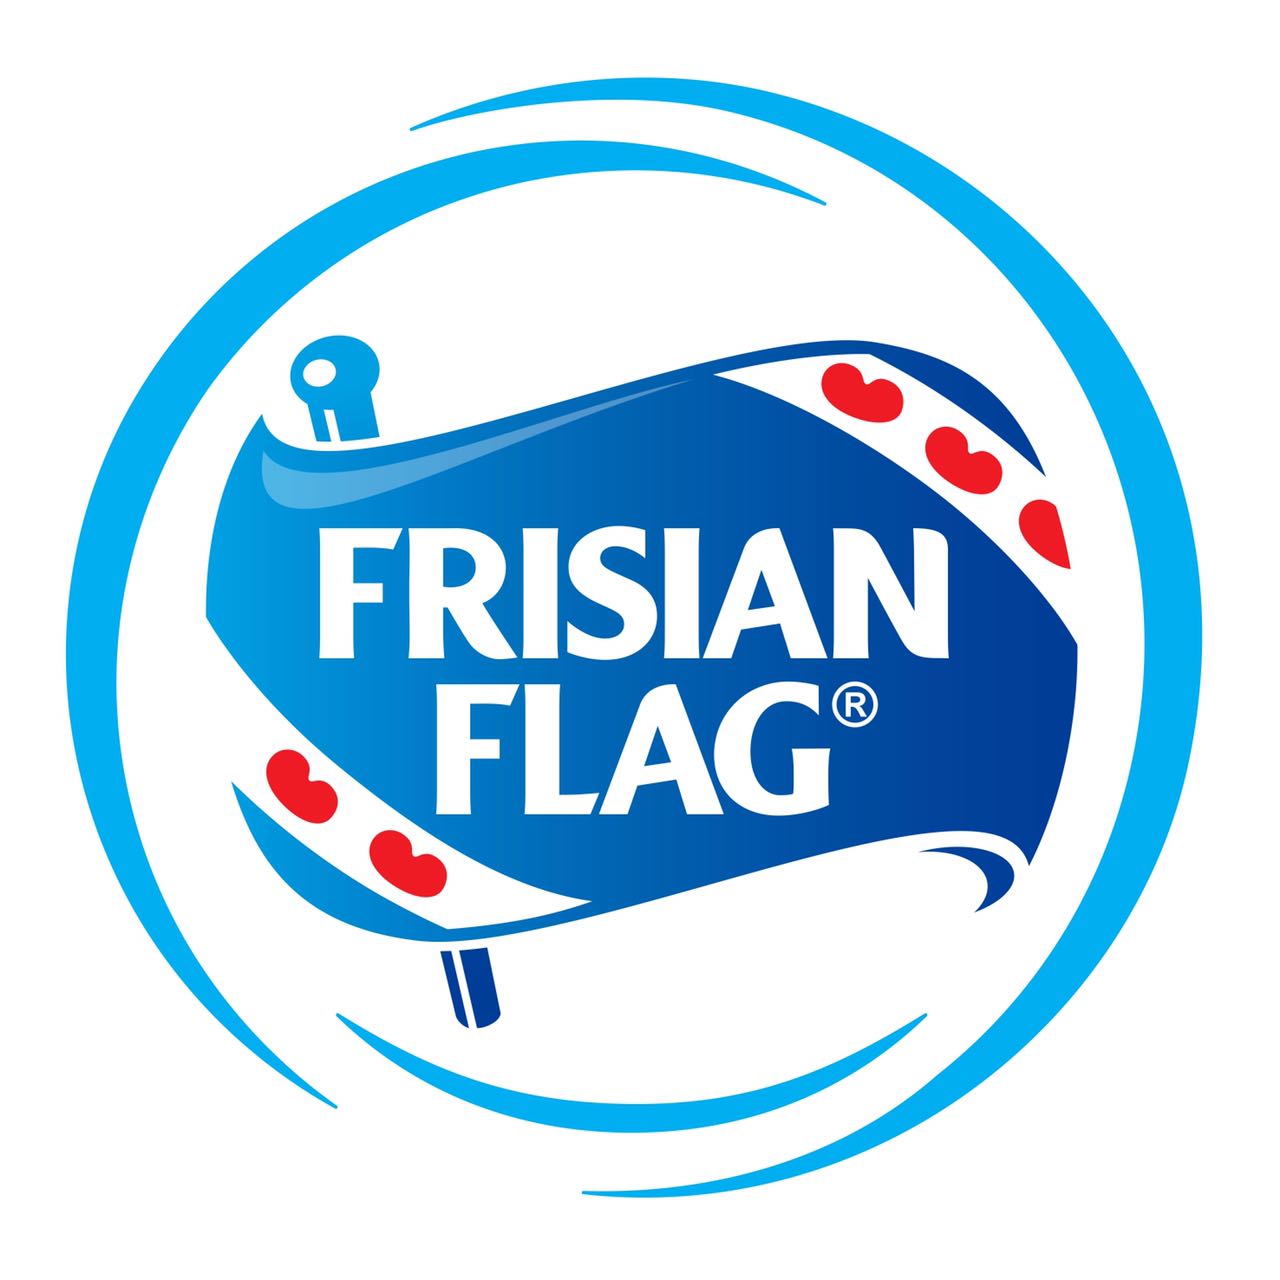 Frisian Flag Indonesia | Online Assessment